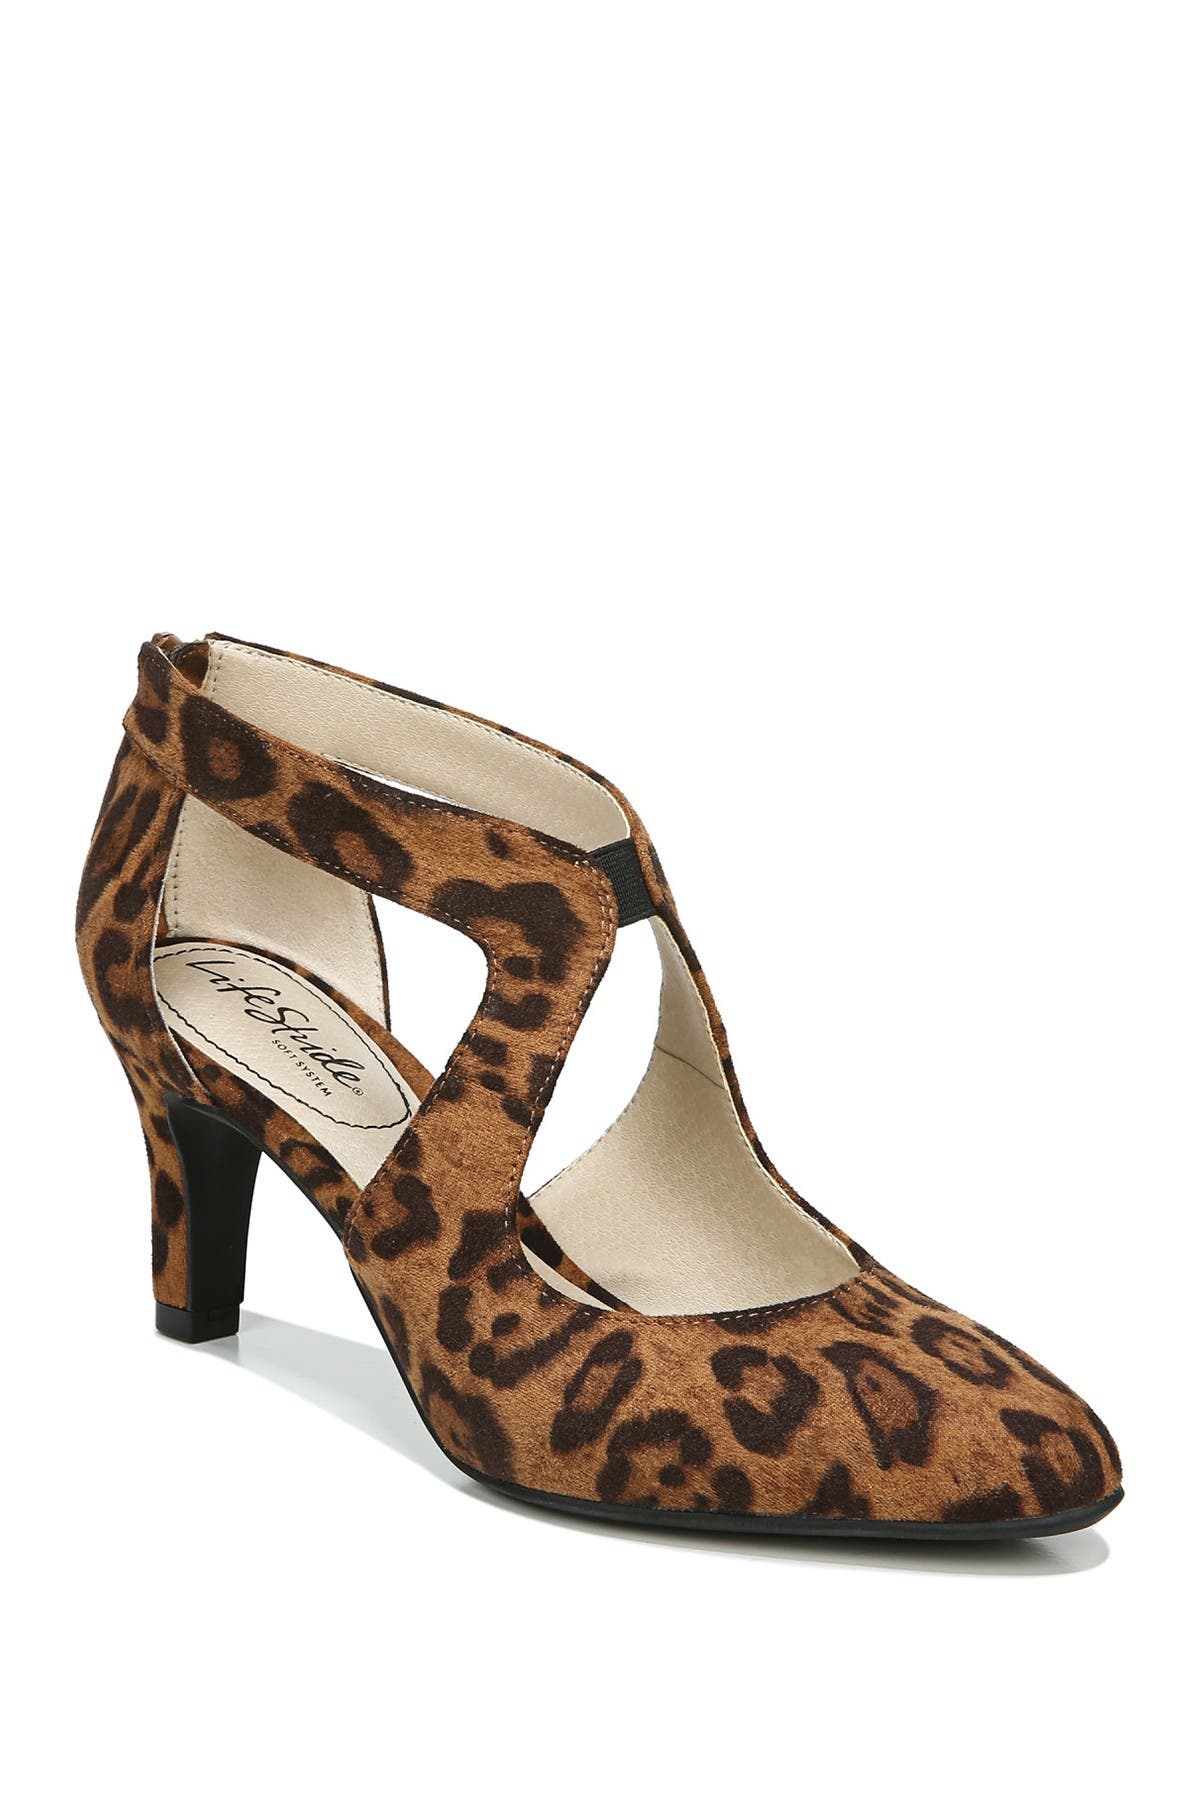 leopard print heels wide width